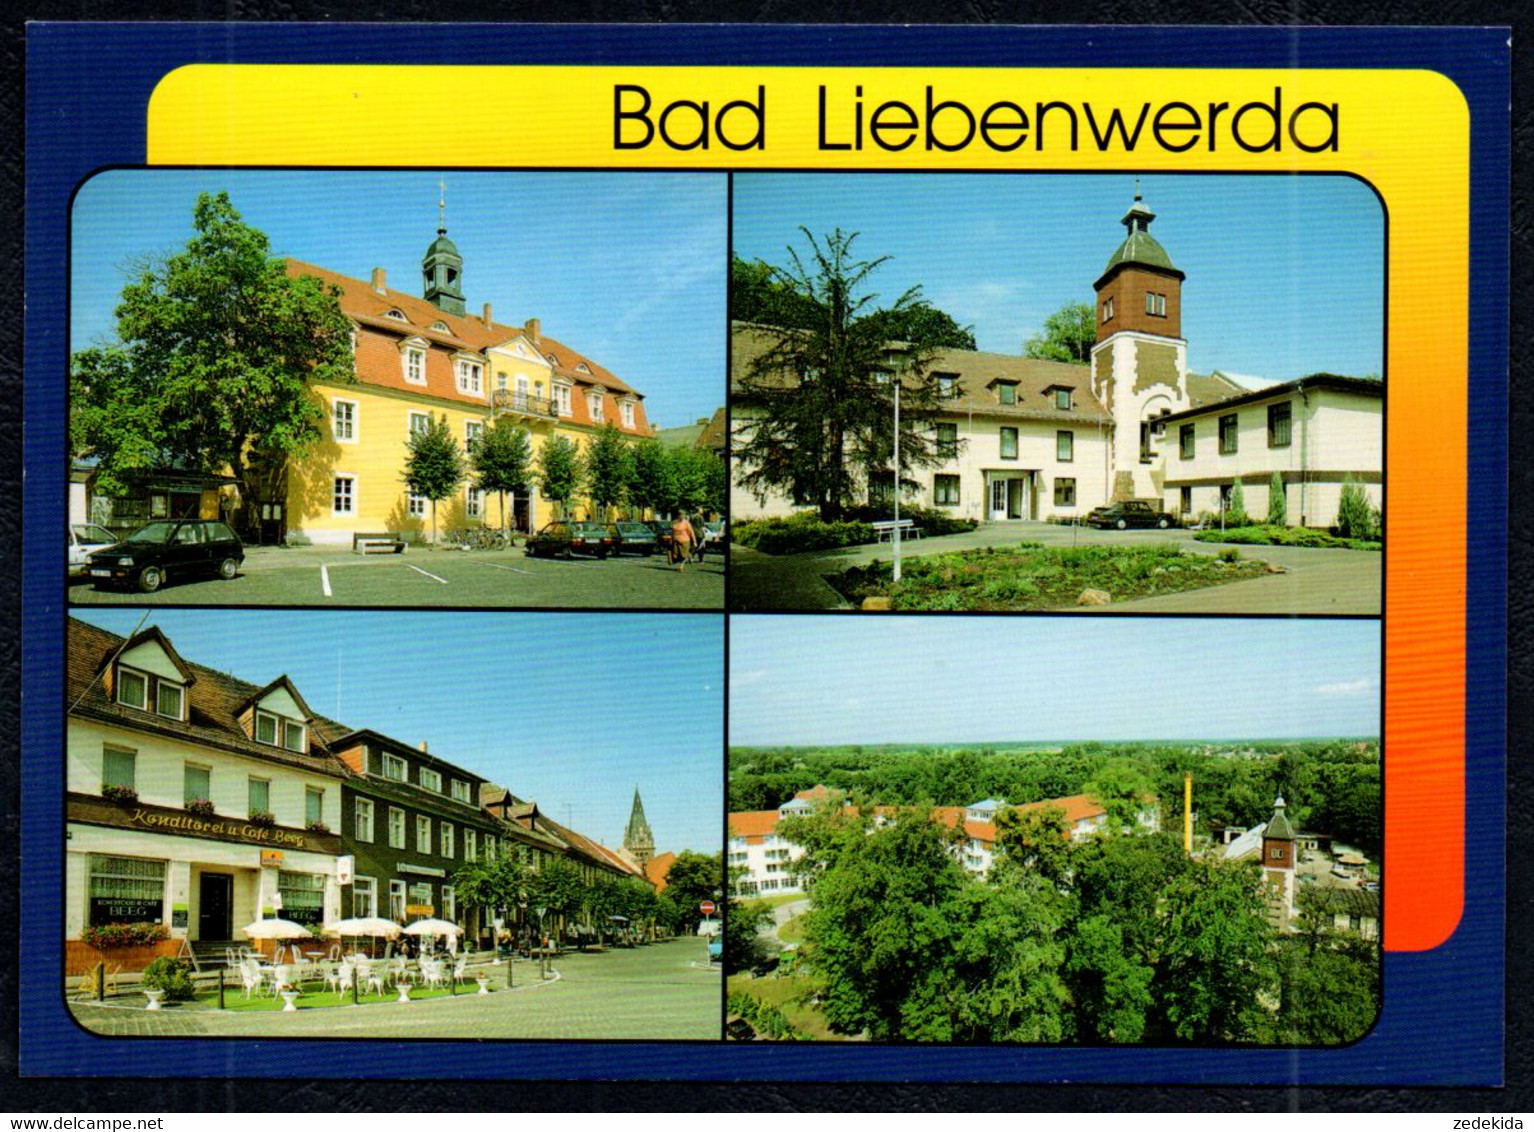 G0820 - TOP Bad Liebenwerda - Bild Und Heimat Reichenbach Qualitätskarte - Bad Liebenwerda